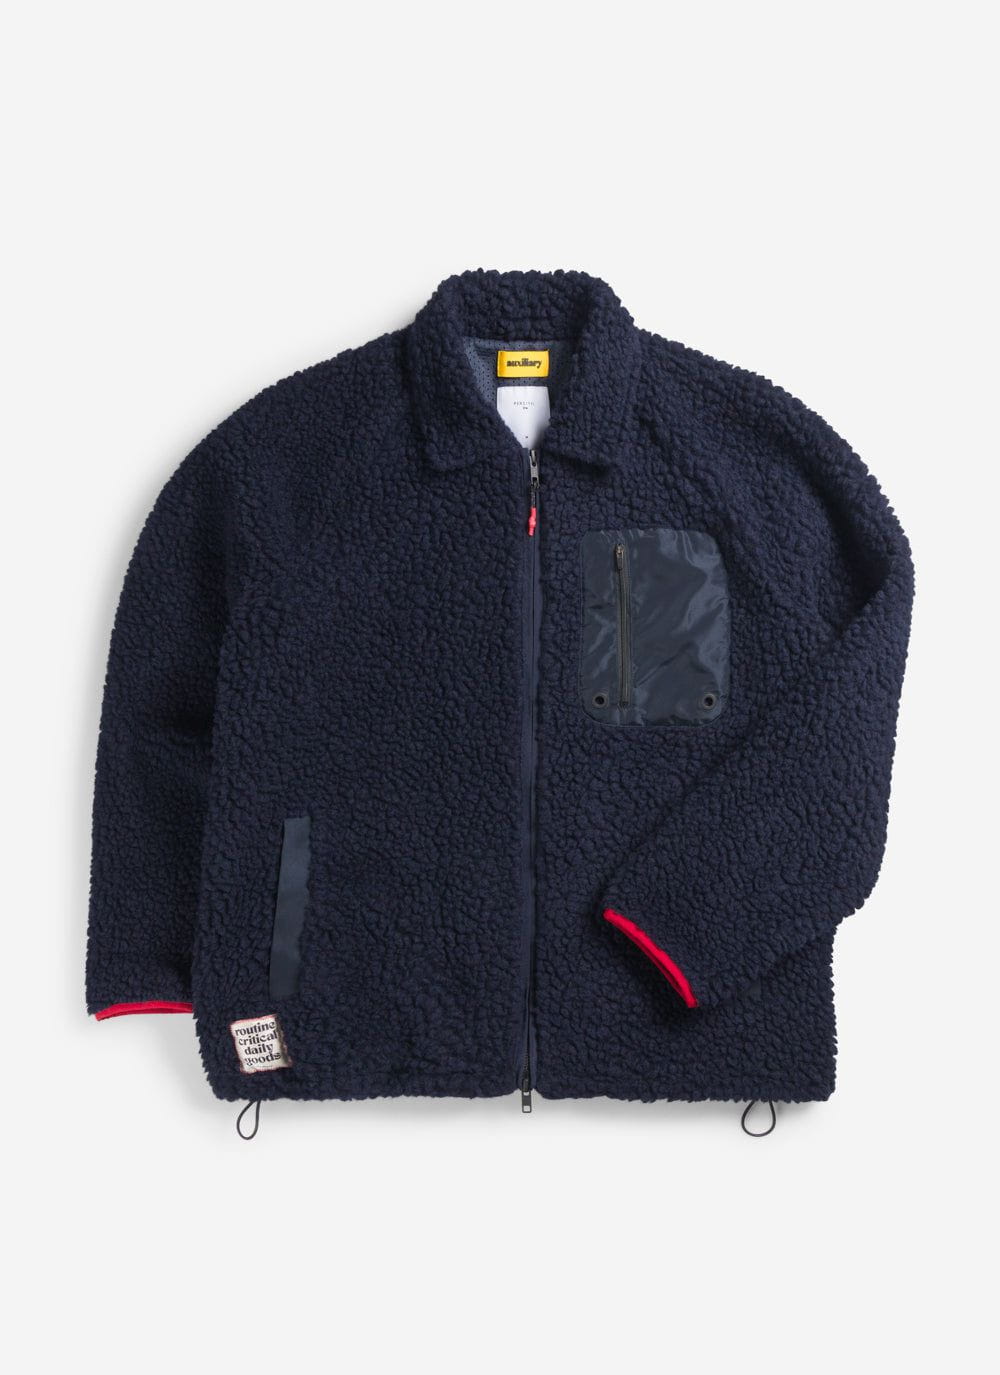 Men's Full Zip Fleece Jacket | Wool | Navy Blue